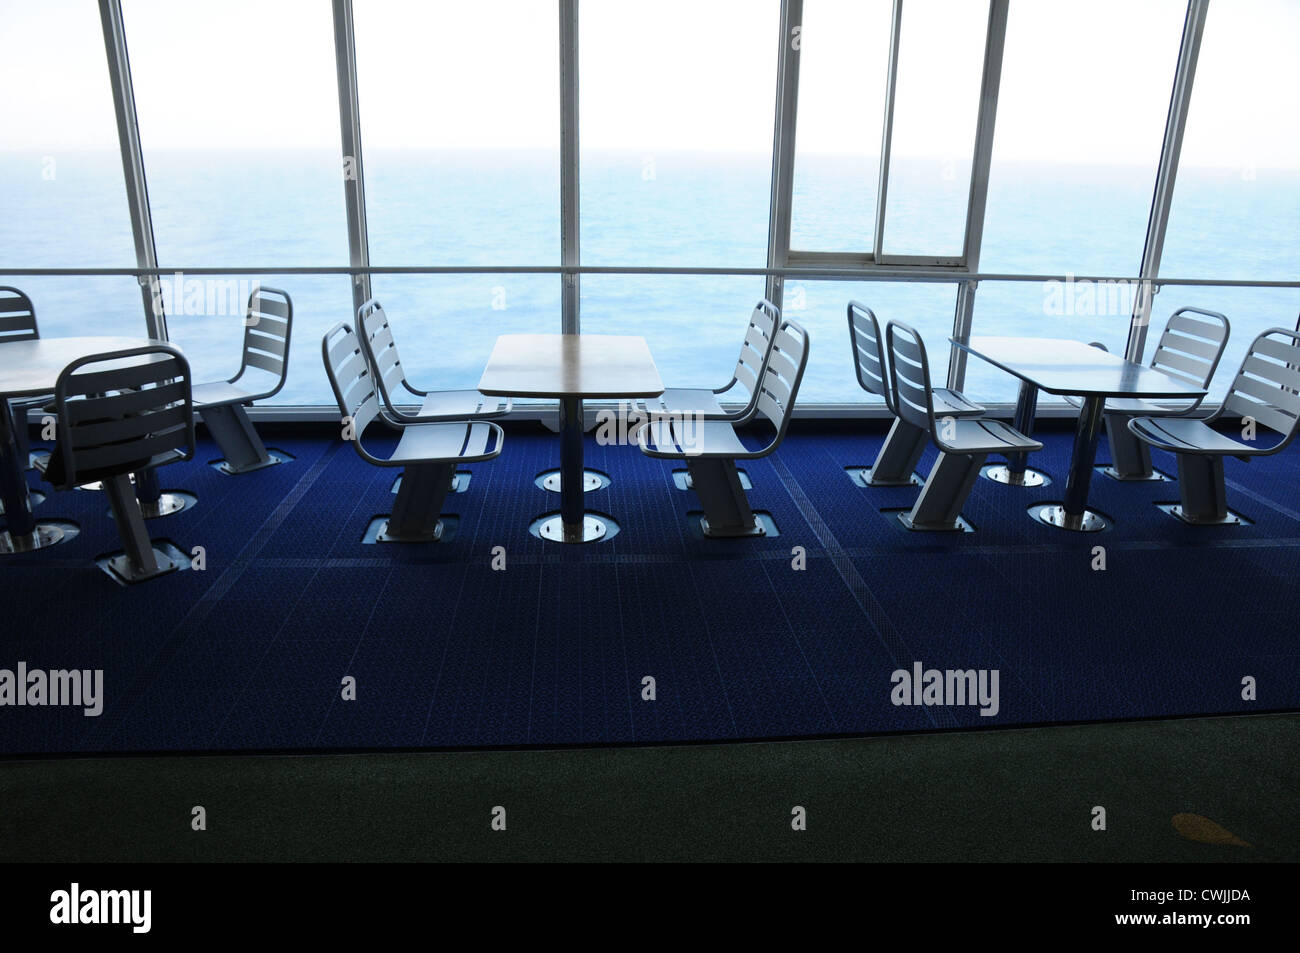 Tables et chaises en acier vide, fixé sur le pont, la fenêtre du sol au plafond, vue sur la mer, sol bleu foncé, cruise ferry, Golfe de Gascogne. Banque D'Images